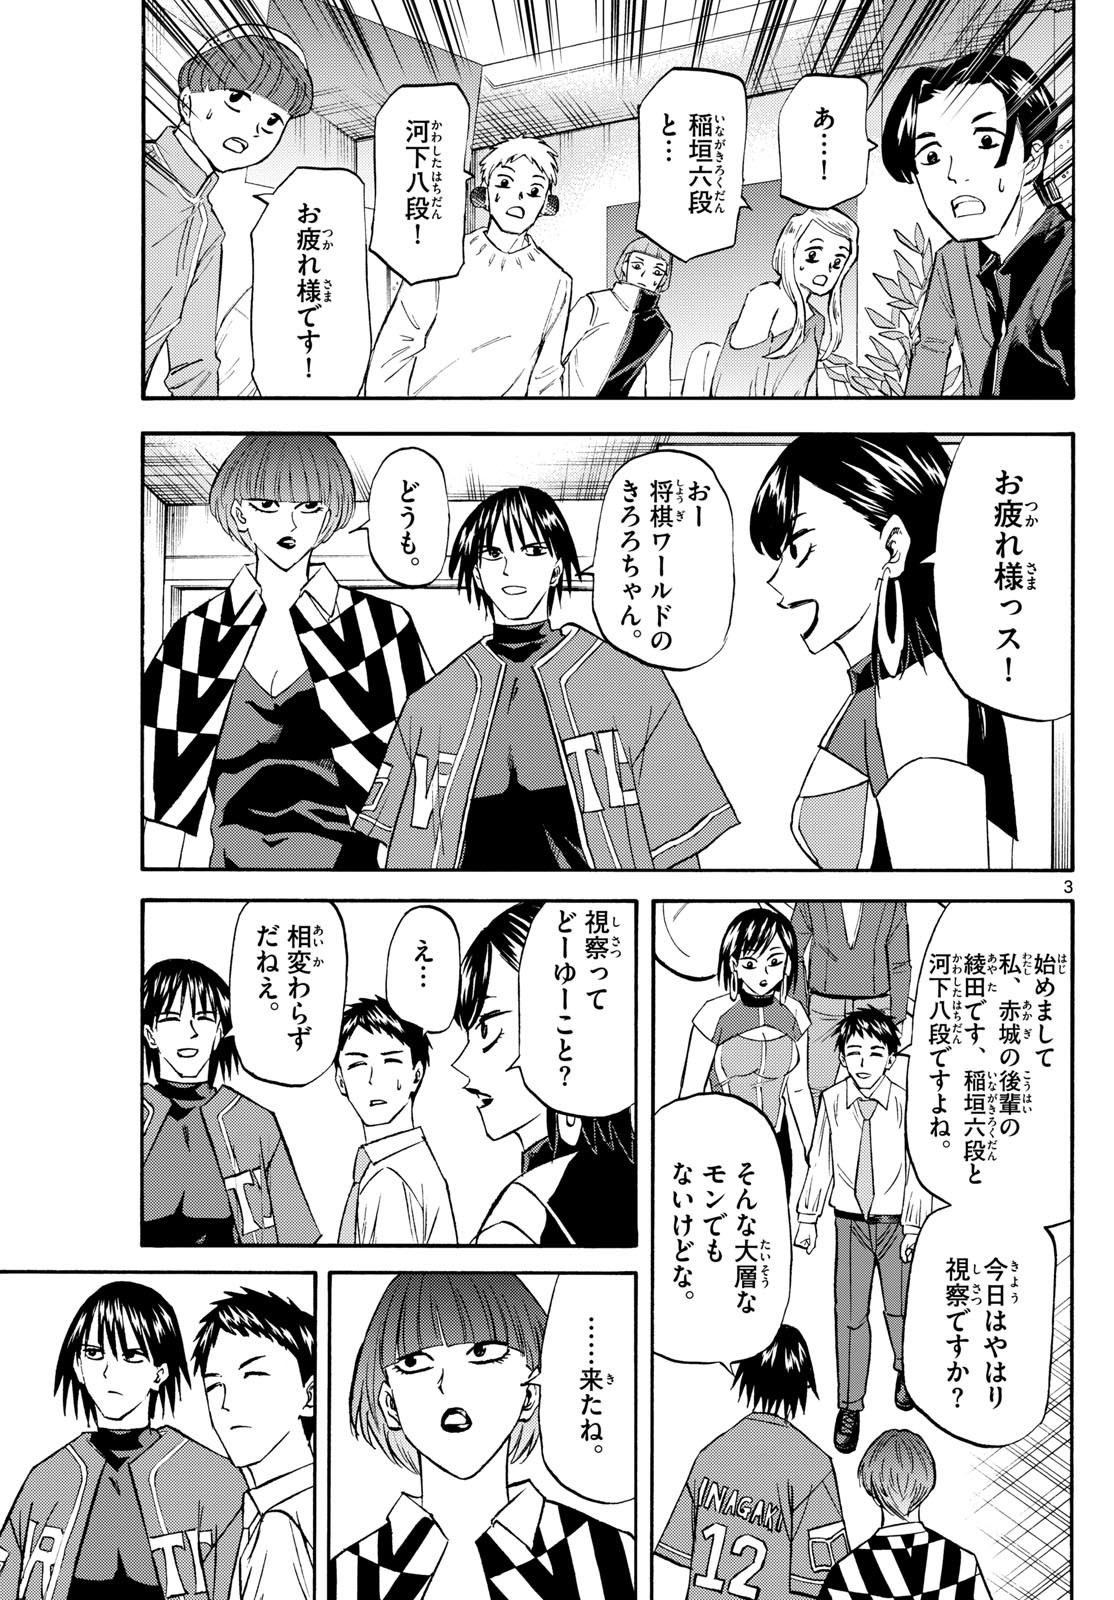 Ryu-to-Ichigo - Chapter 196 - Page 3